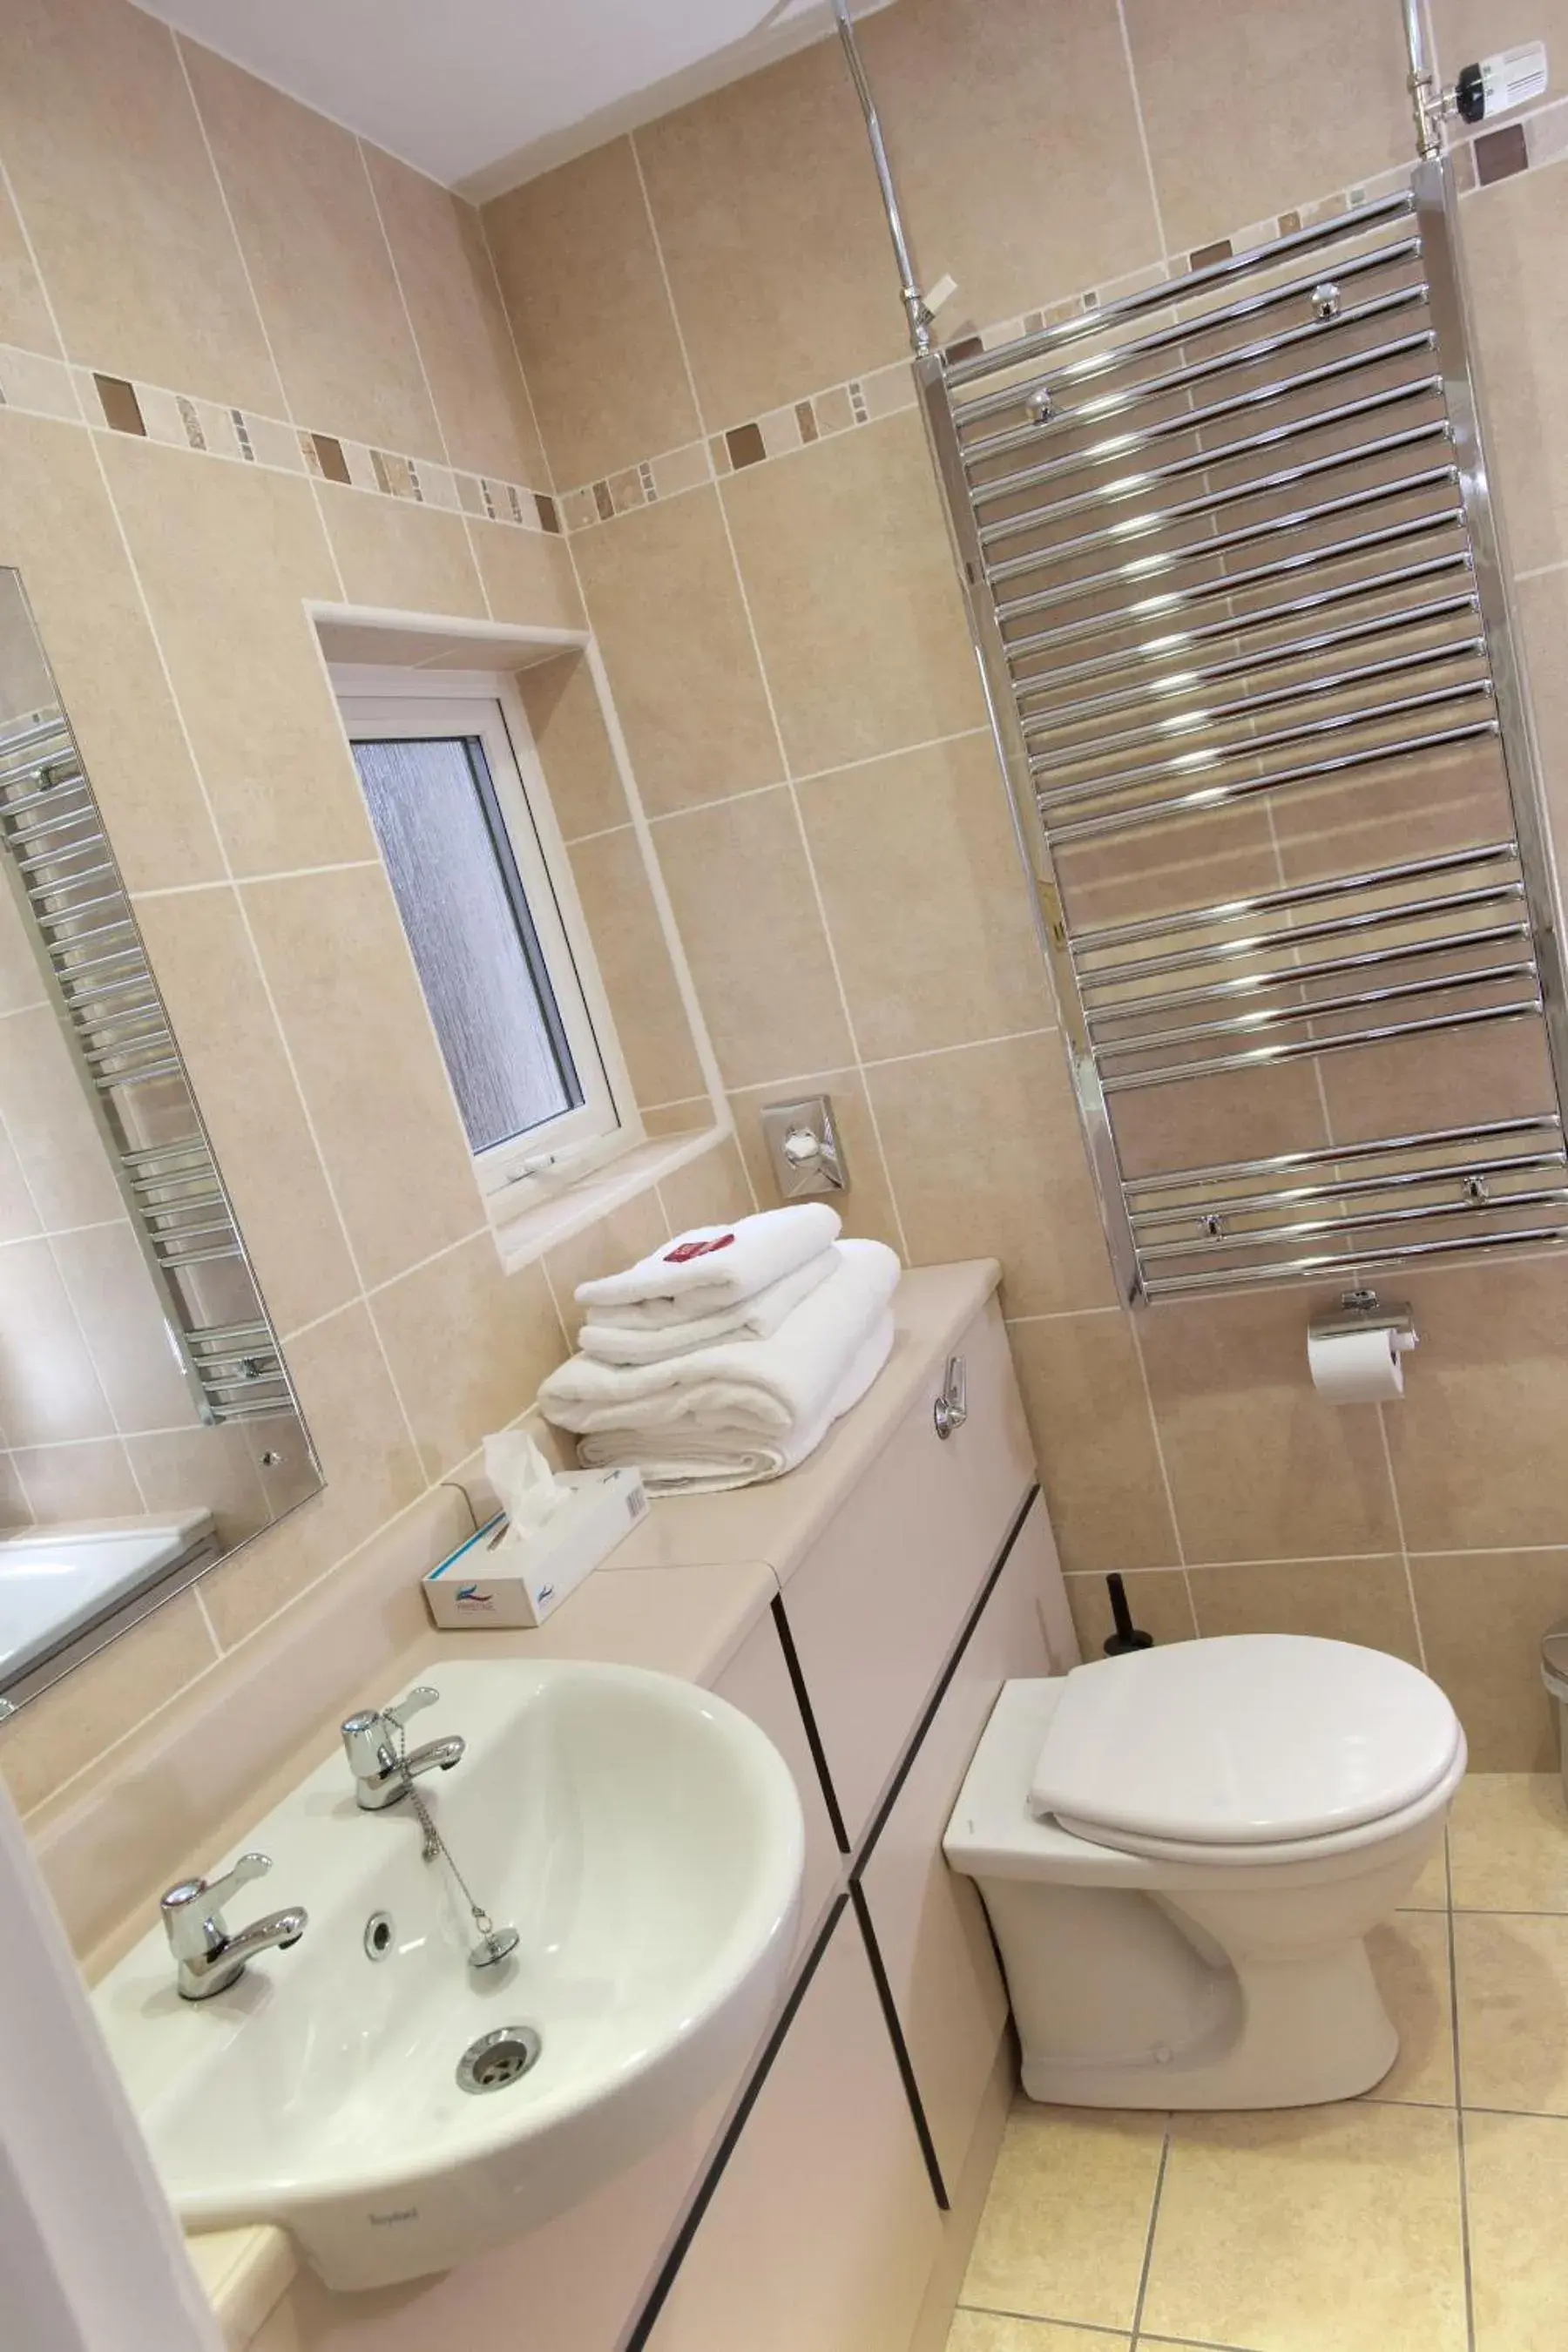 Bathroom in Adair Arms Hotel